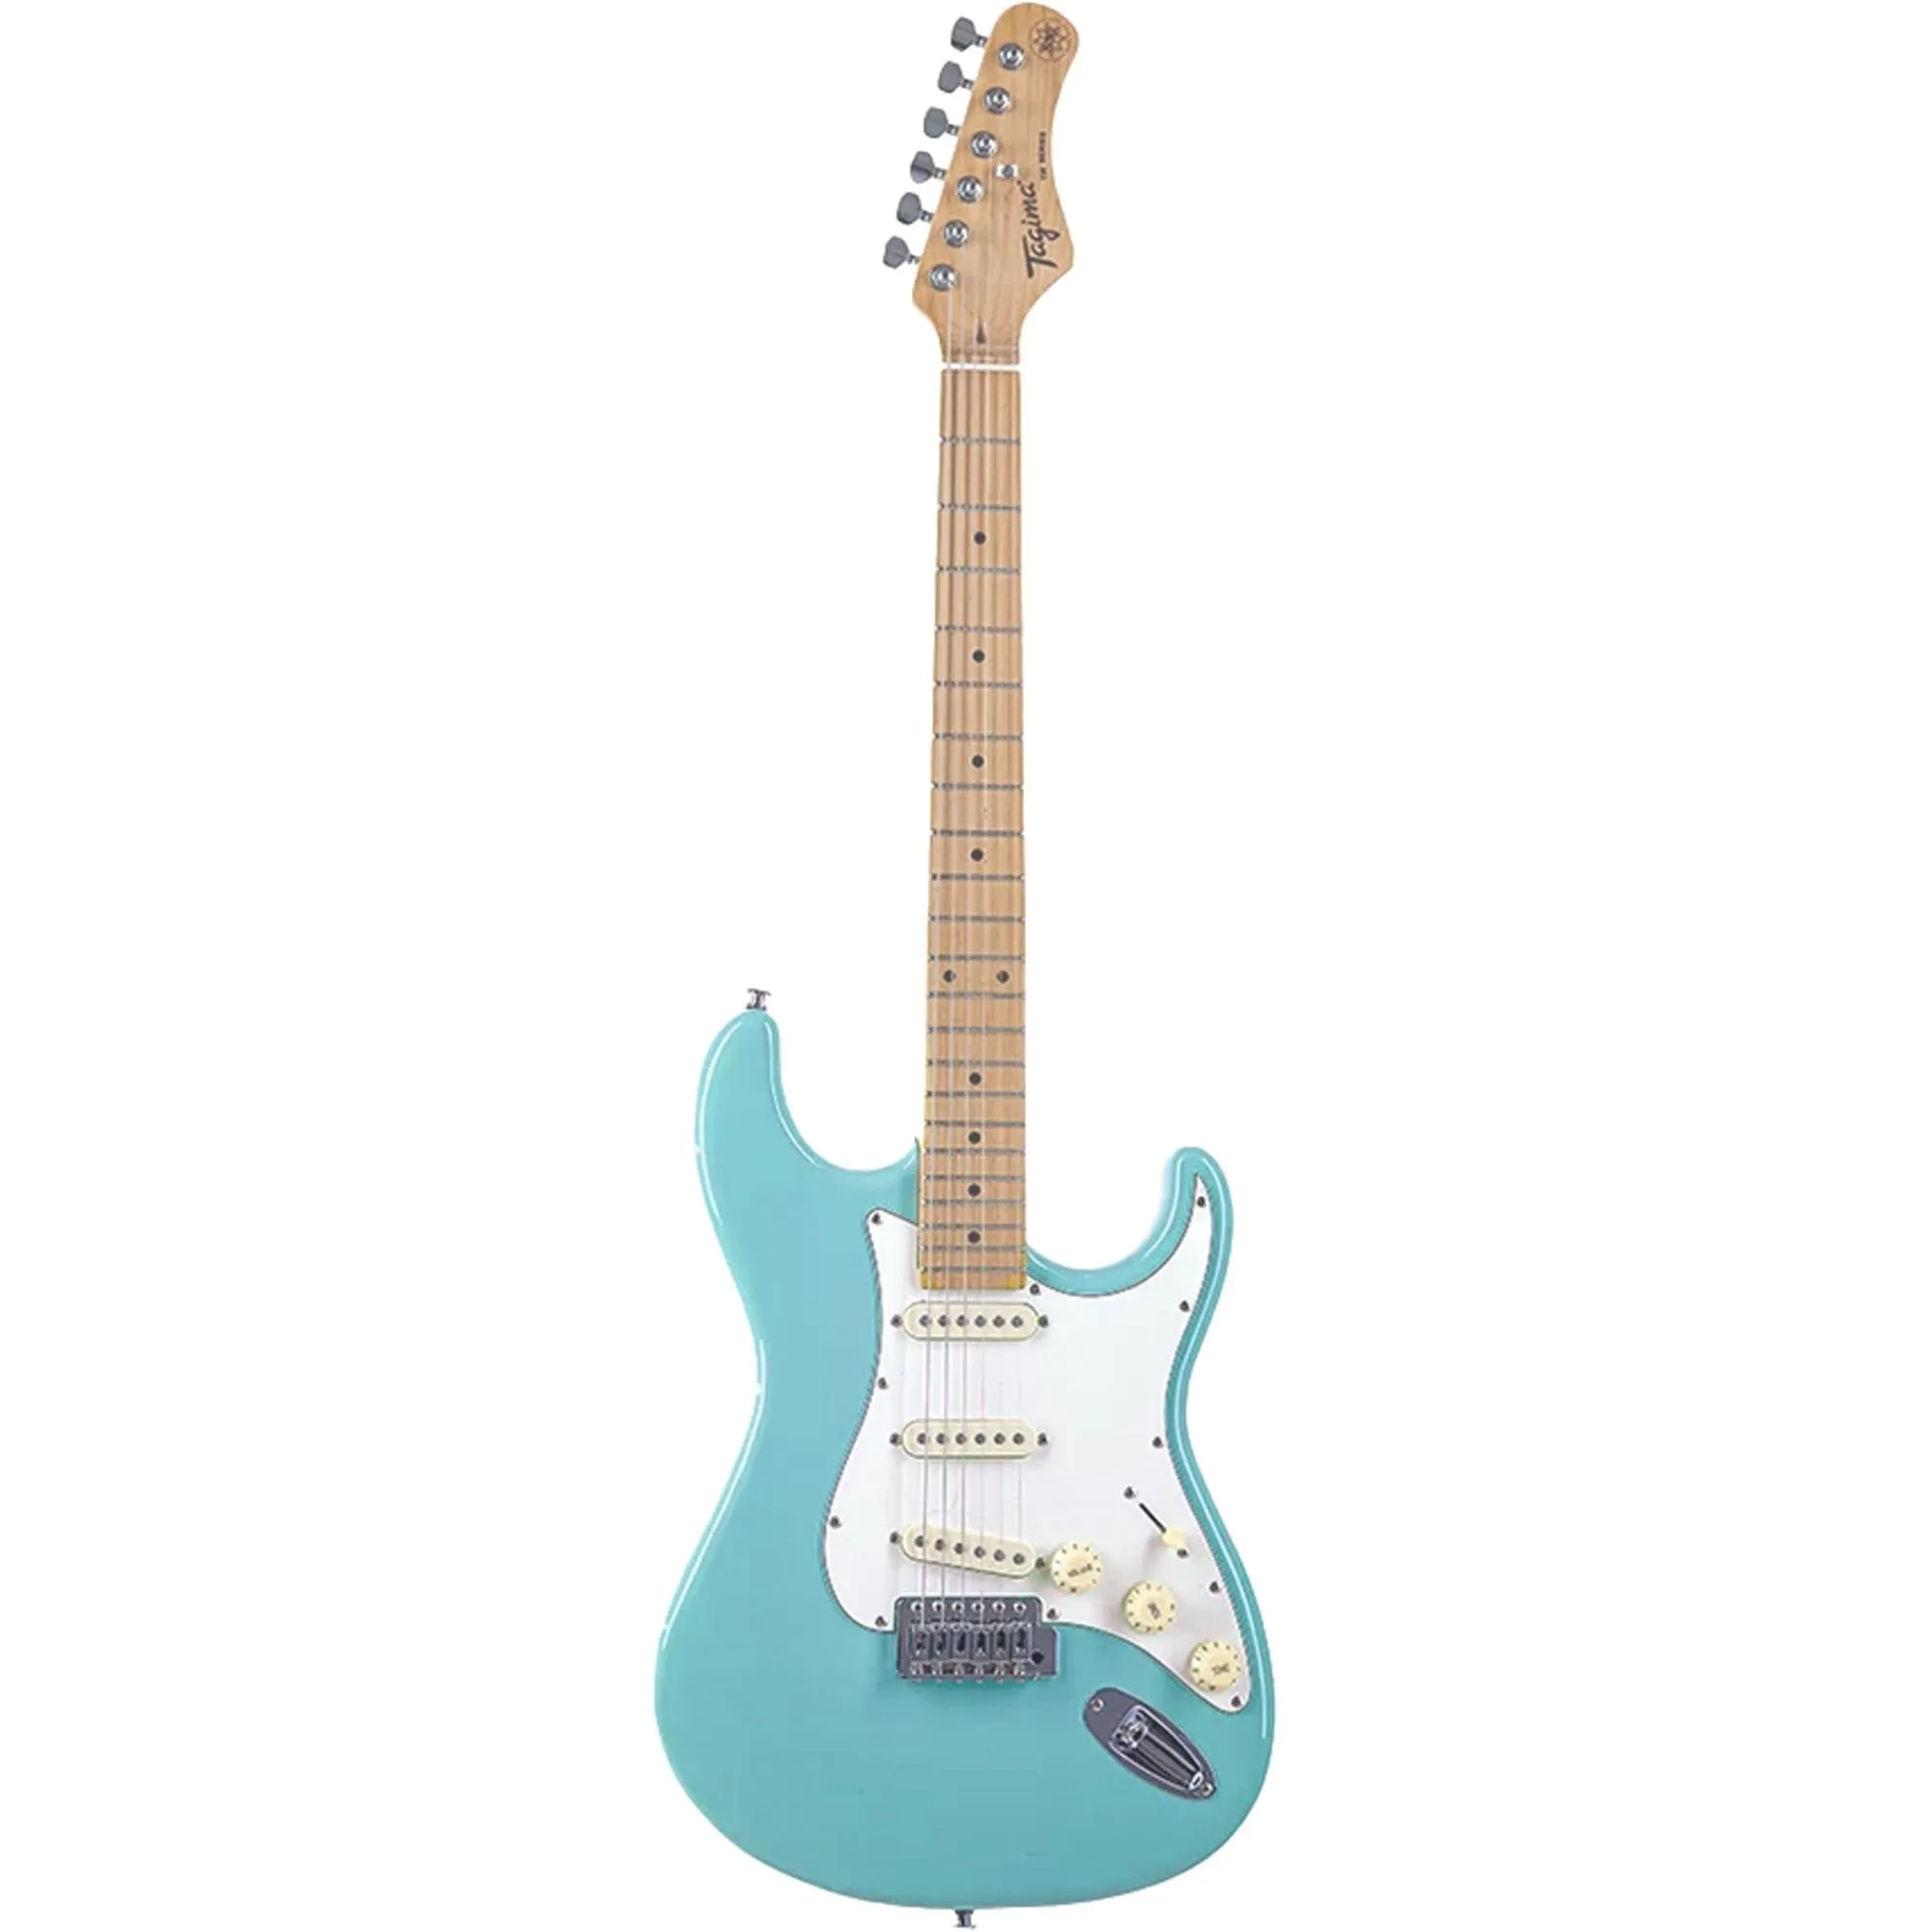 Guitarra Tagima TG-530 Woodstock Lake Placid Blue por 999,99 à vista no boleto/pix ou parcele em até 10x sem juros. Compre na loja Mundomax!